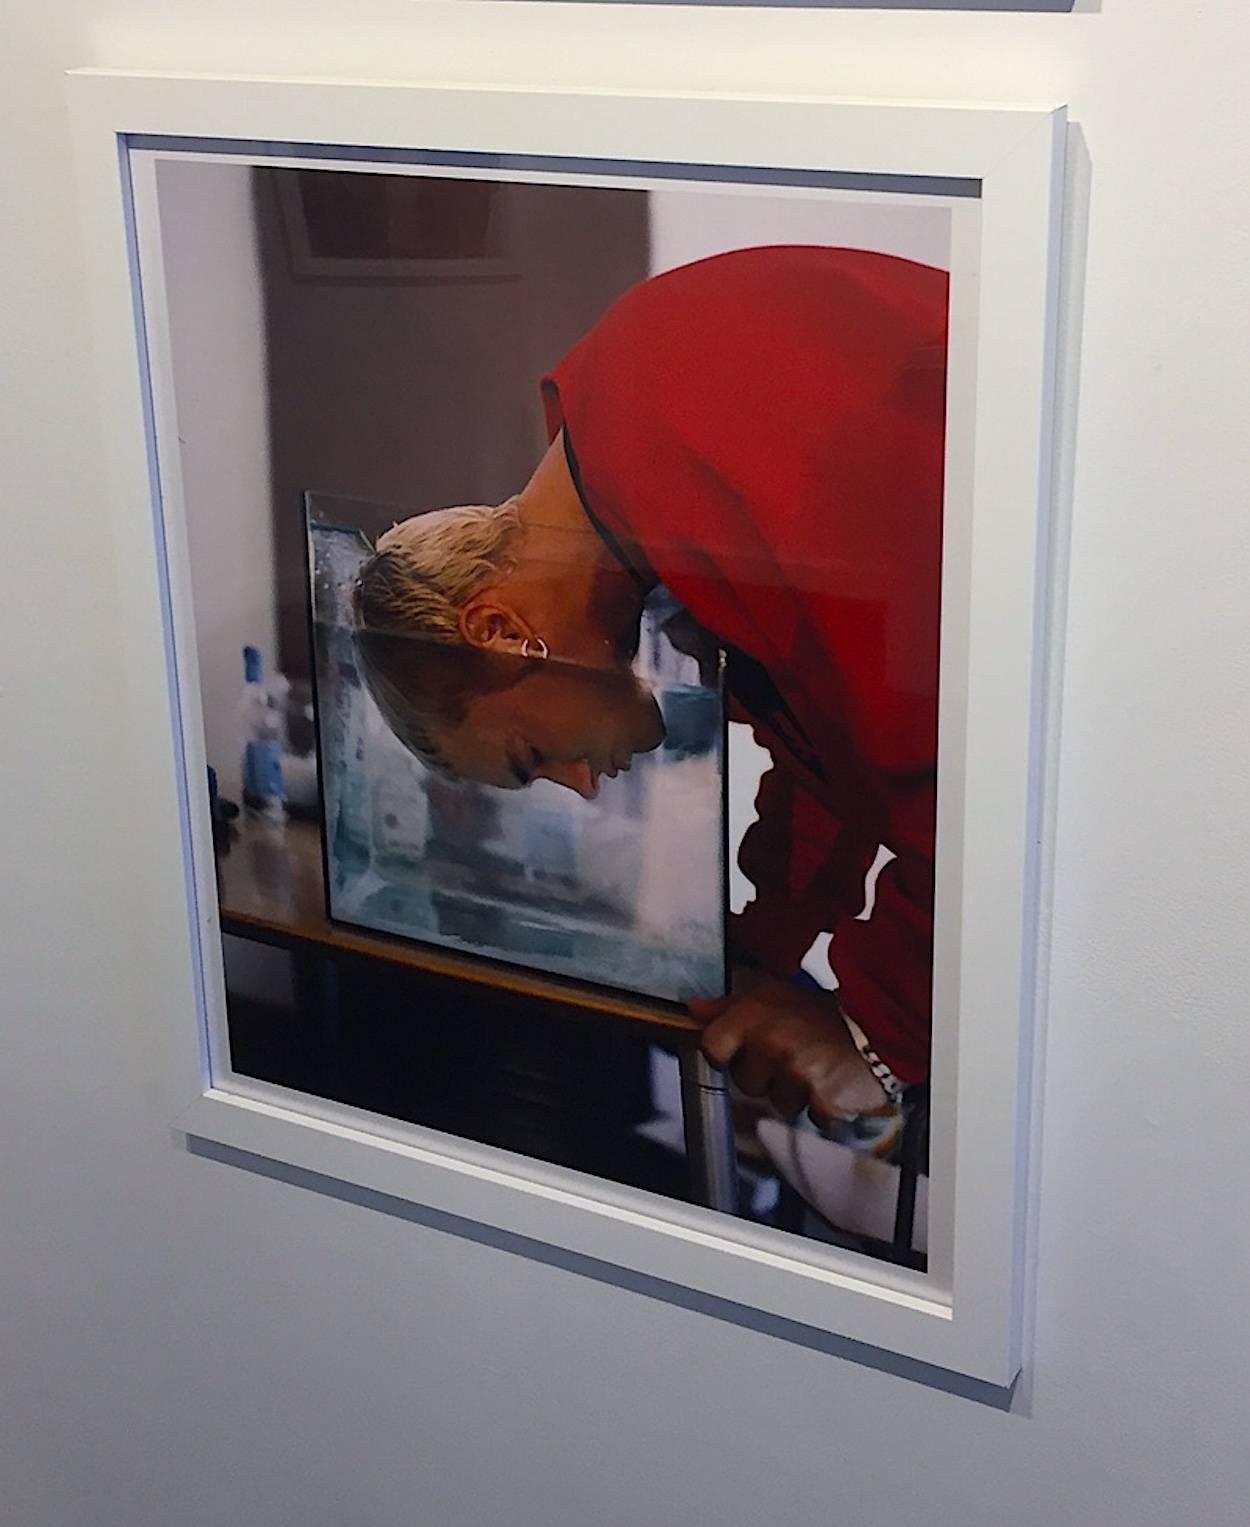 Eminem 1999 (non encadré) photo figurative portrait contemporain rouge - Photograph de Chris Buck